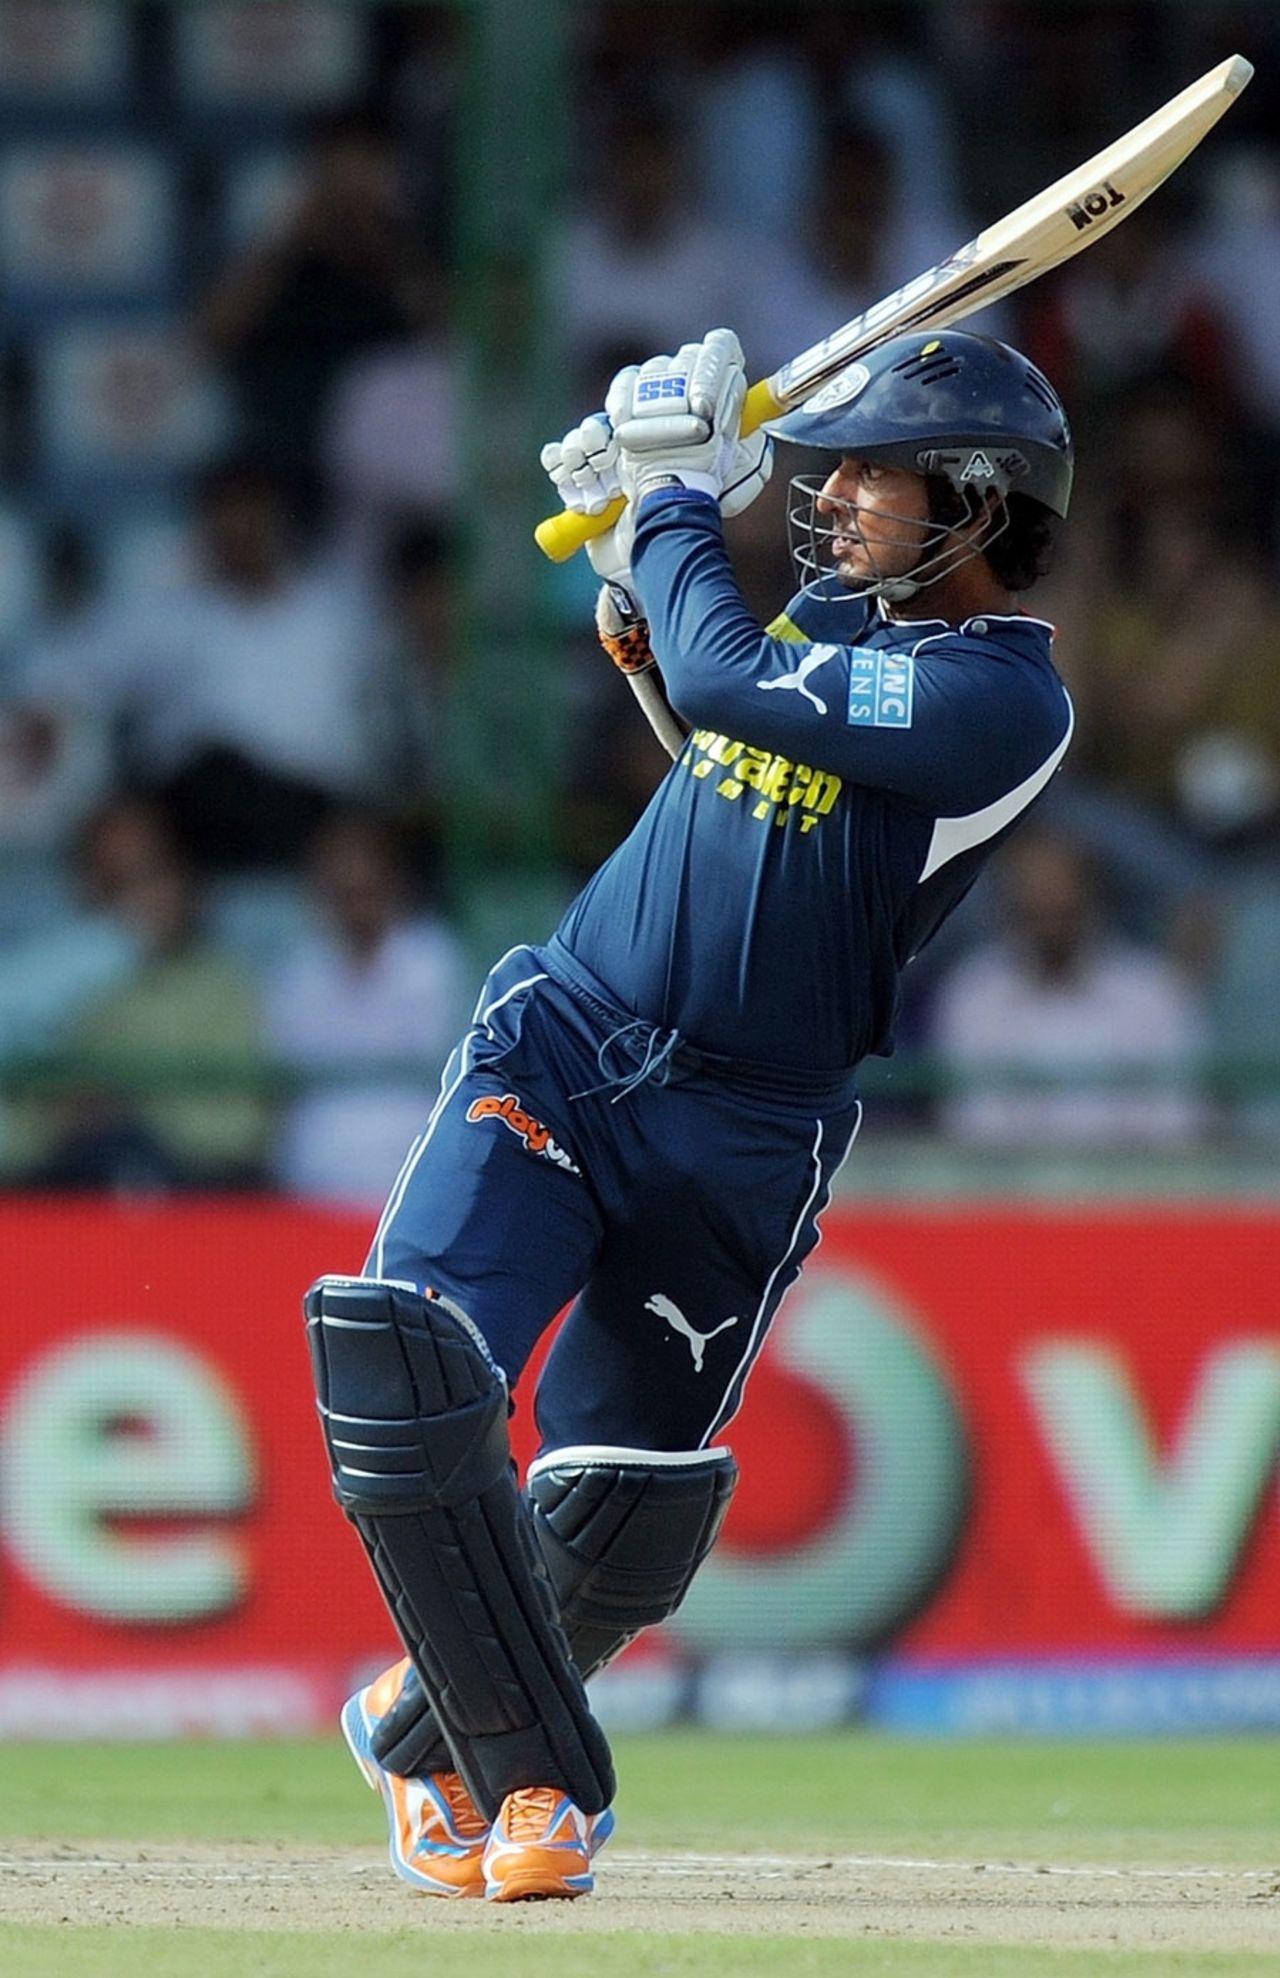 Kumar Sangakkara made 49 off 35 balls, Delhi Daredevils v Deccan Chargers, IPL 2011, Delhi, April 19, 2011